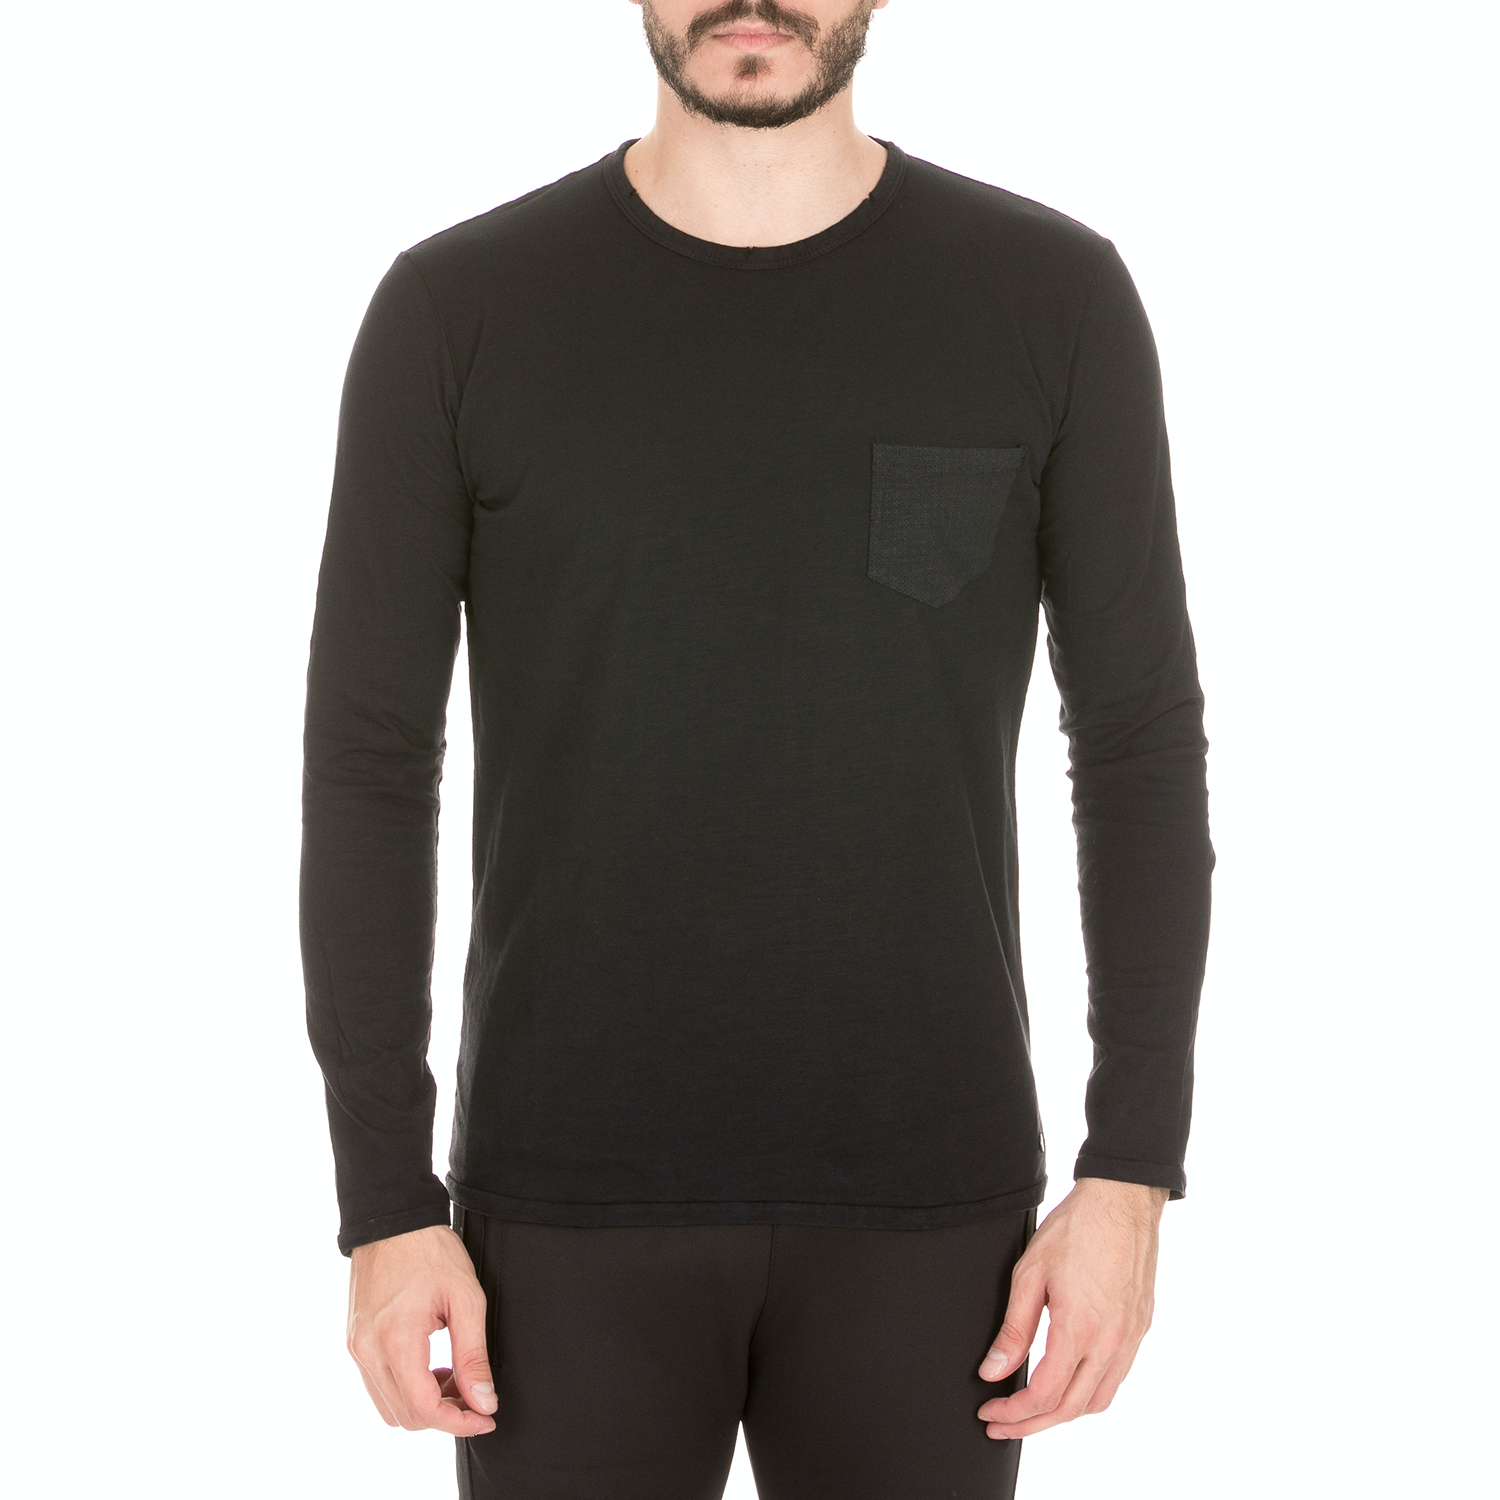 BATTERY - Ανδρική μπλούζα BATTERY μαύρη Ανδρικά/Ρούχα/Μπλούζες/Μακρυμάνικες